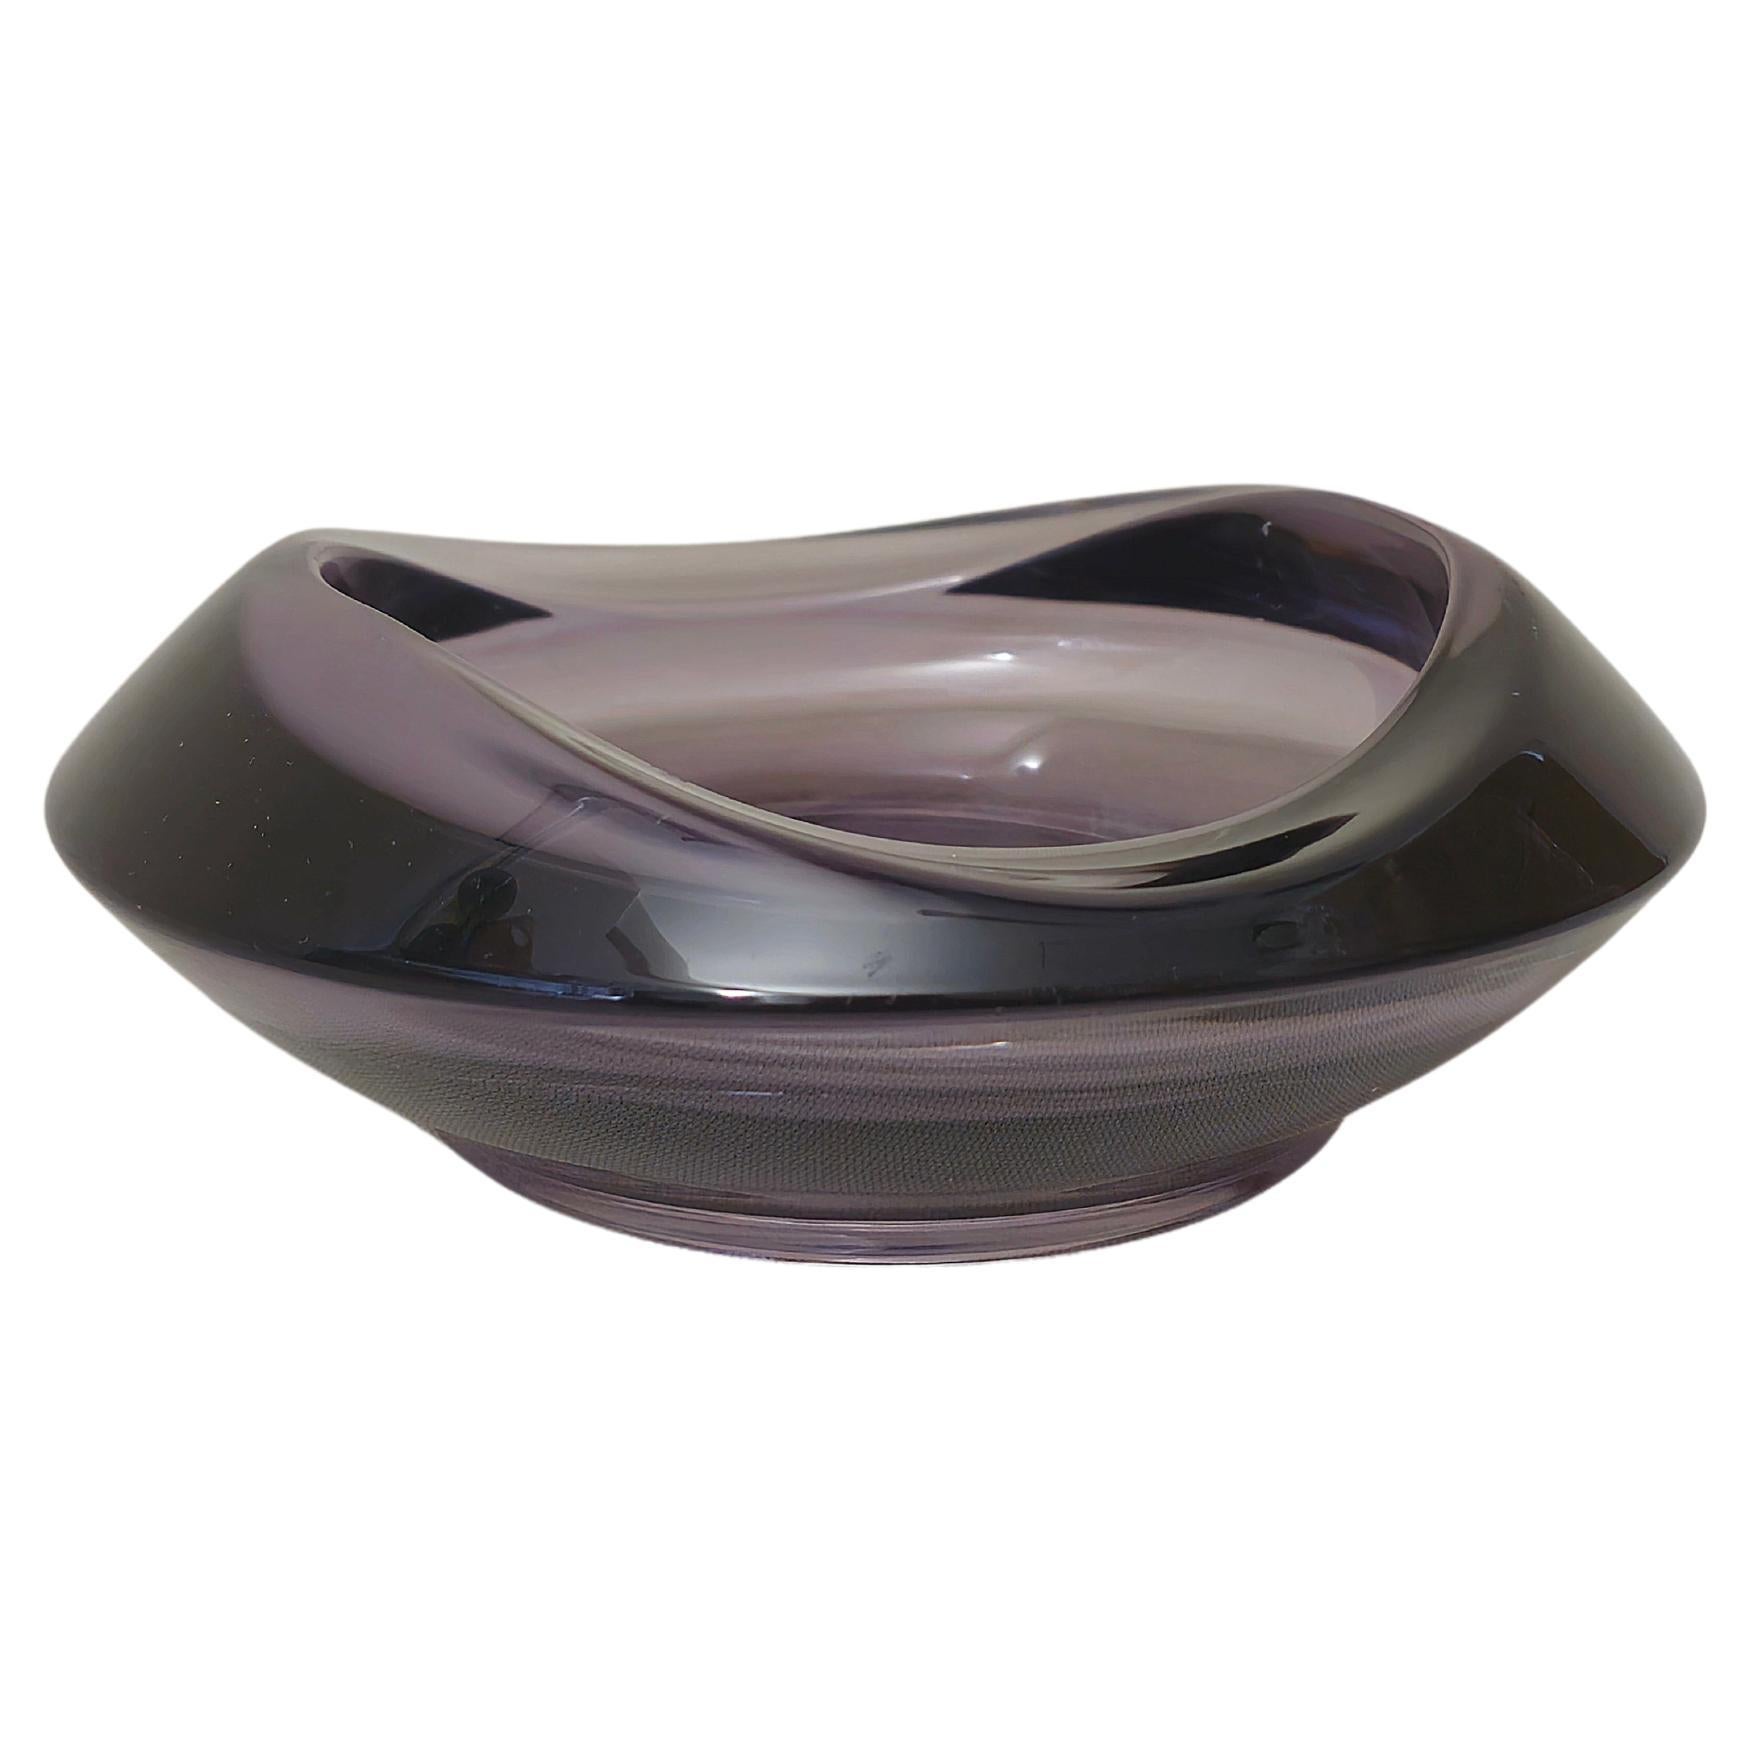 Vide-Poche Decorative Object Violet Murano Glass Midcentury Italian Design 1970s